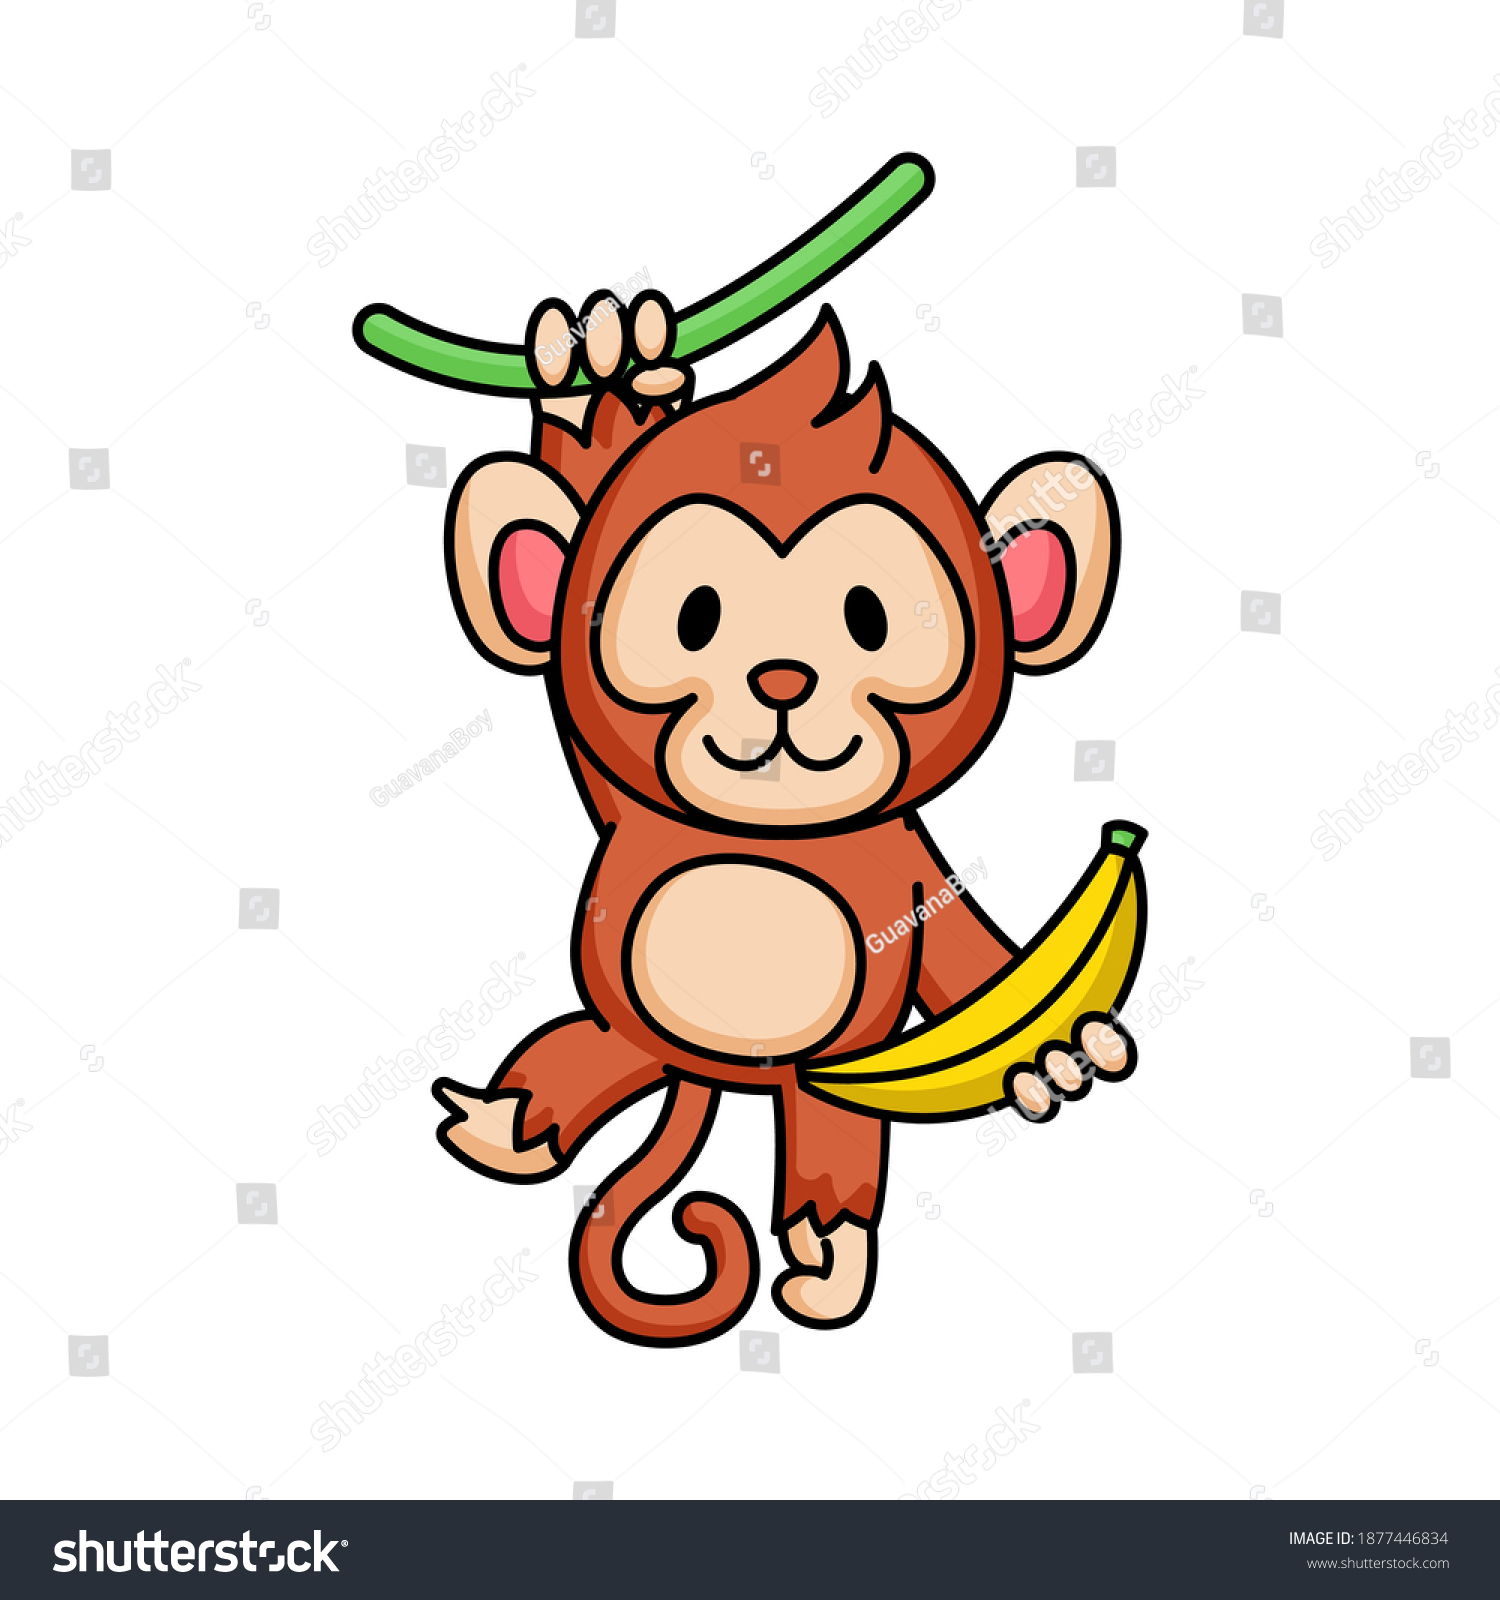 Cute Chibi Kawaii Baby Monkey Banana: Vector Có Sẵn (Miễn Phí Bản Quyền)  1877446834 | Shutterstock